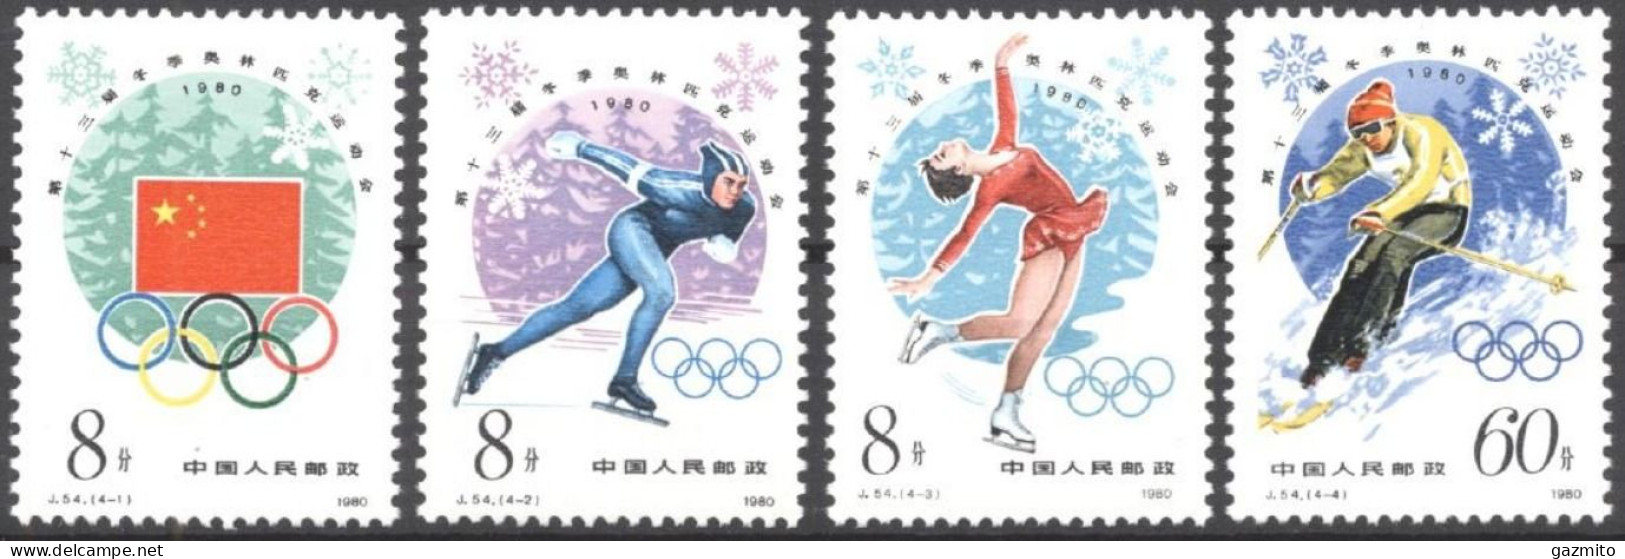 China 1980, Winter Olympic Games, Lake Placid, Skating, Skiing, 4val - Nuovi